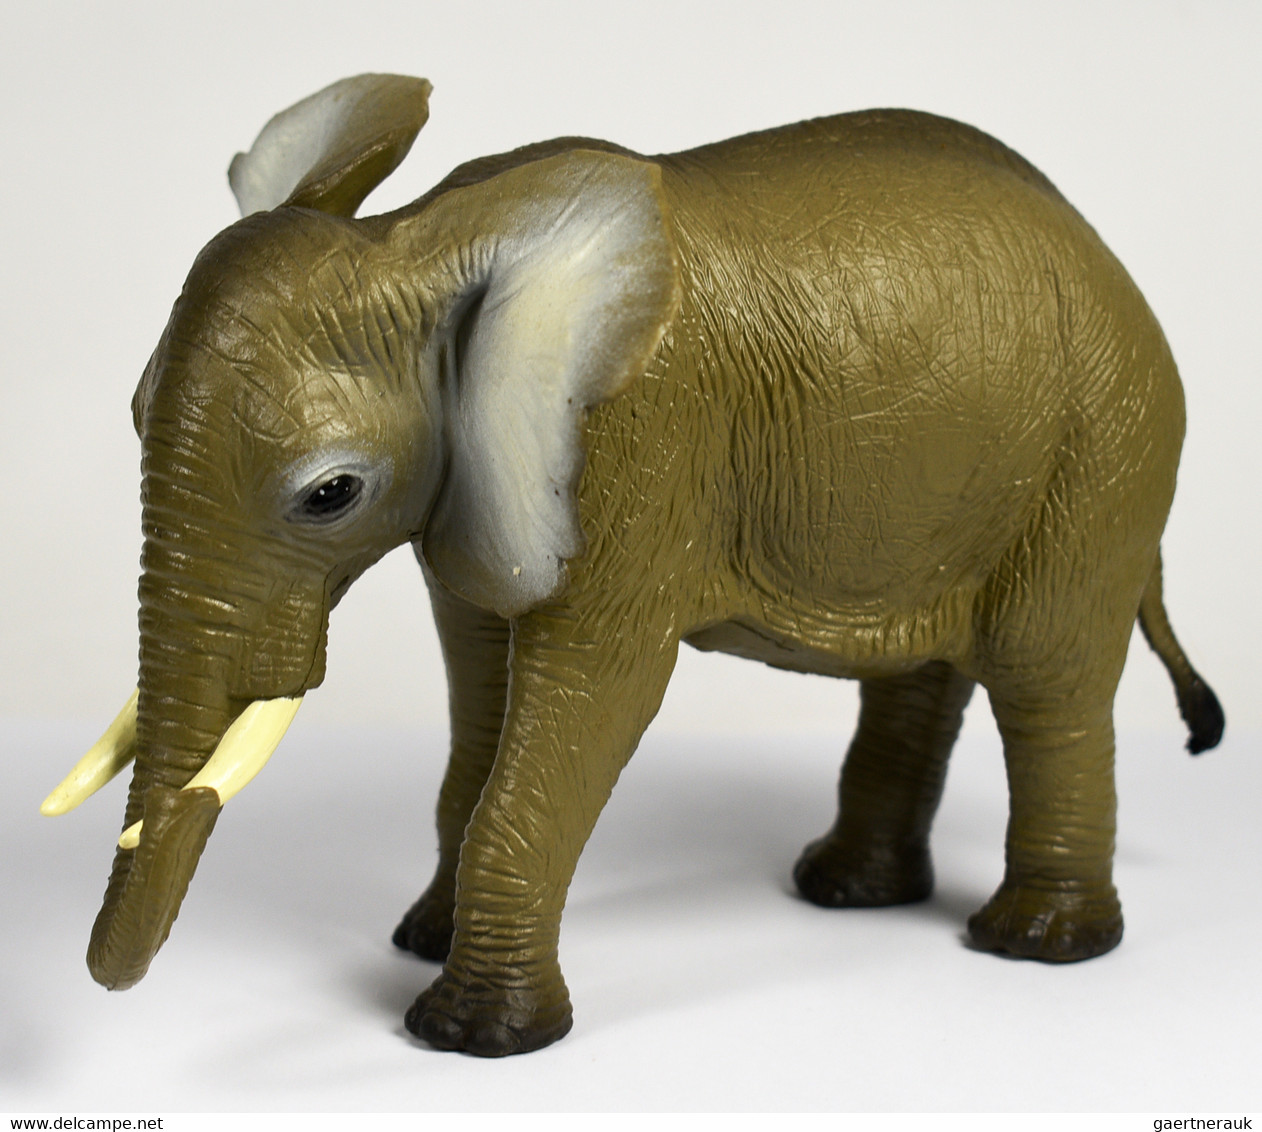 Varia (im Briefmarkenkatalog): ELEFANTEN, ca. 290 Elefantenfiguren in allen erdenklichen Variationen